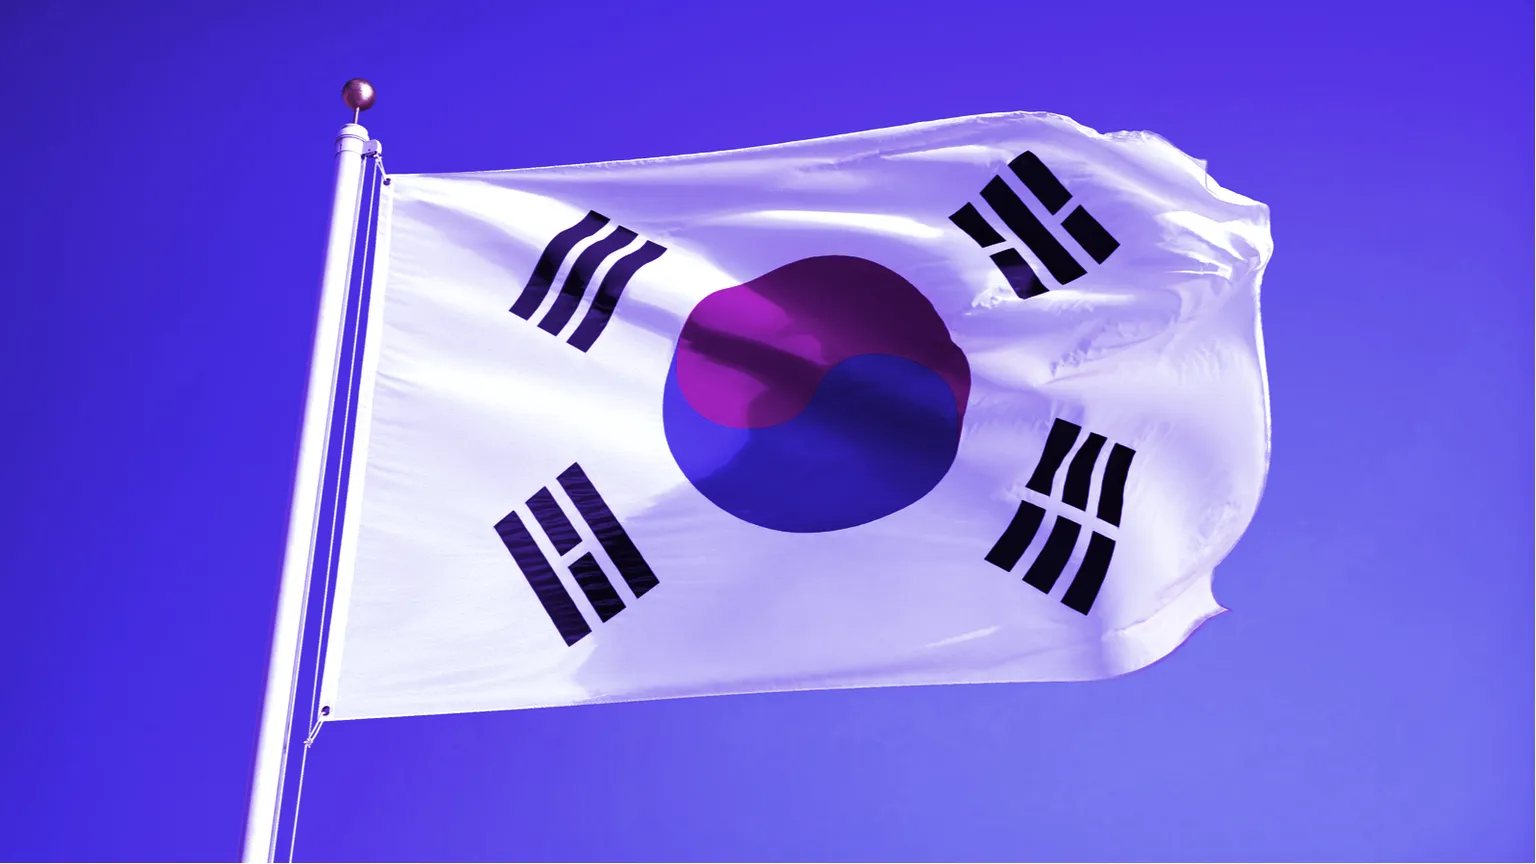 South Korea's flag